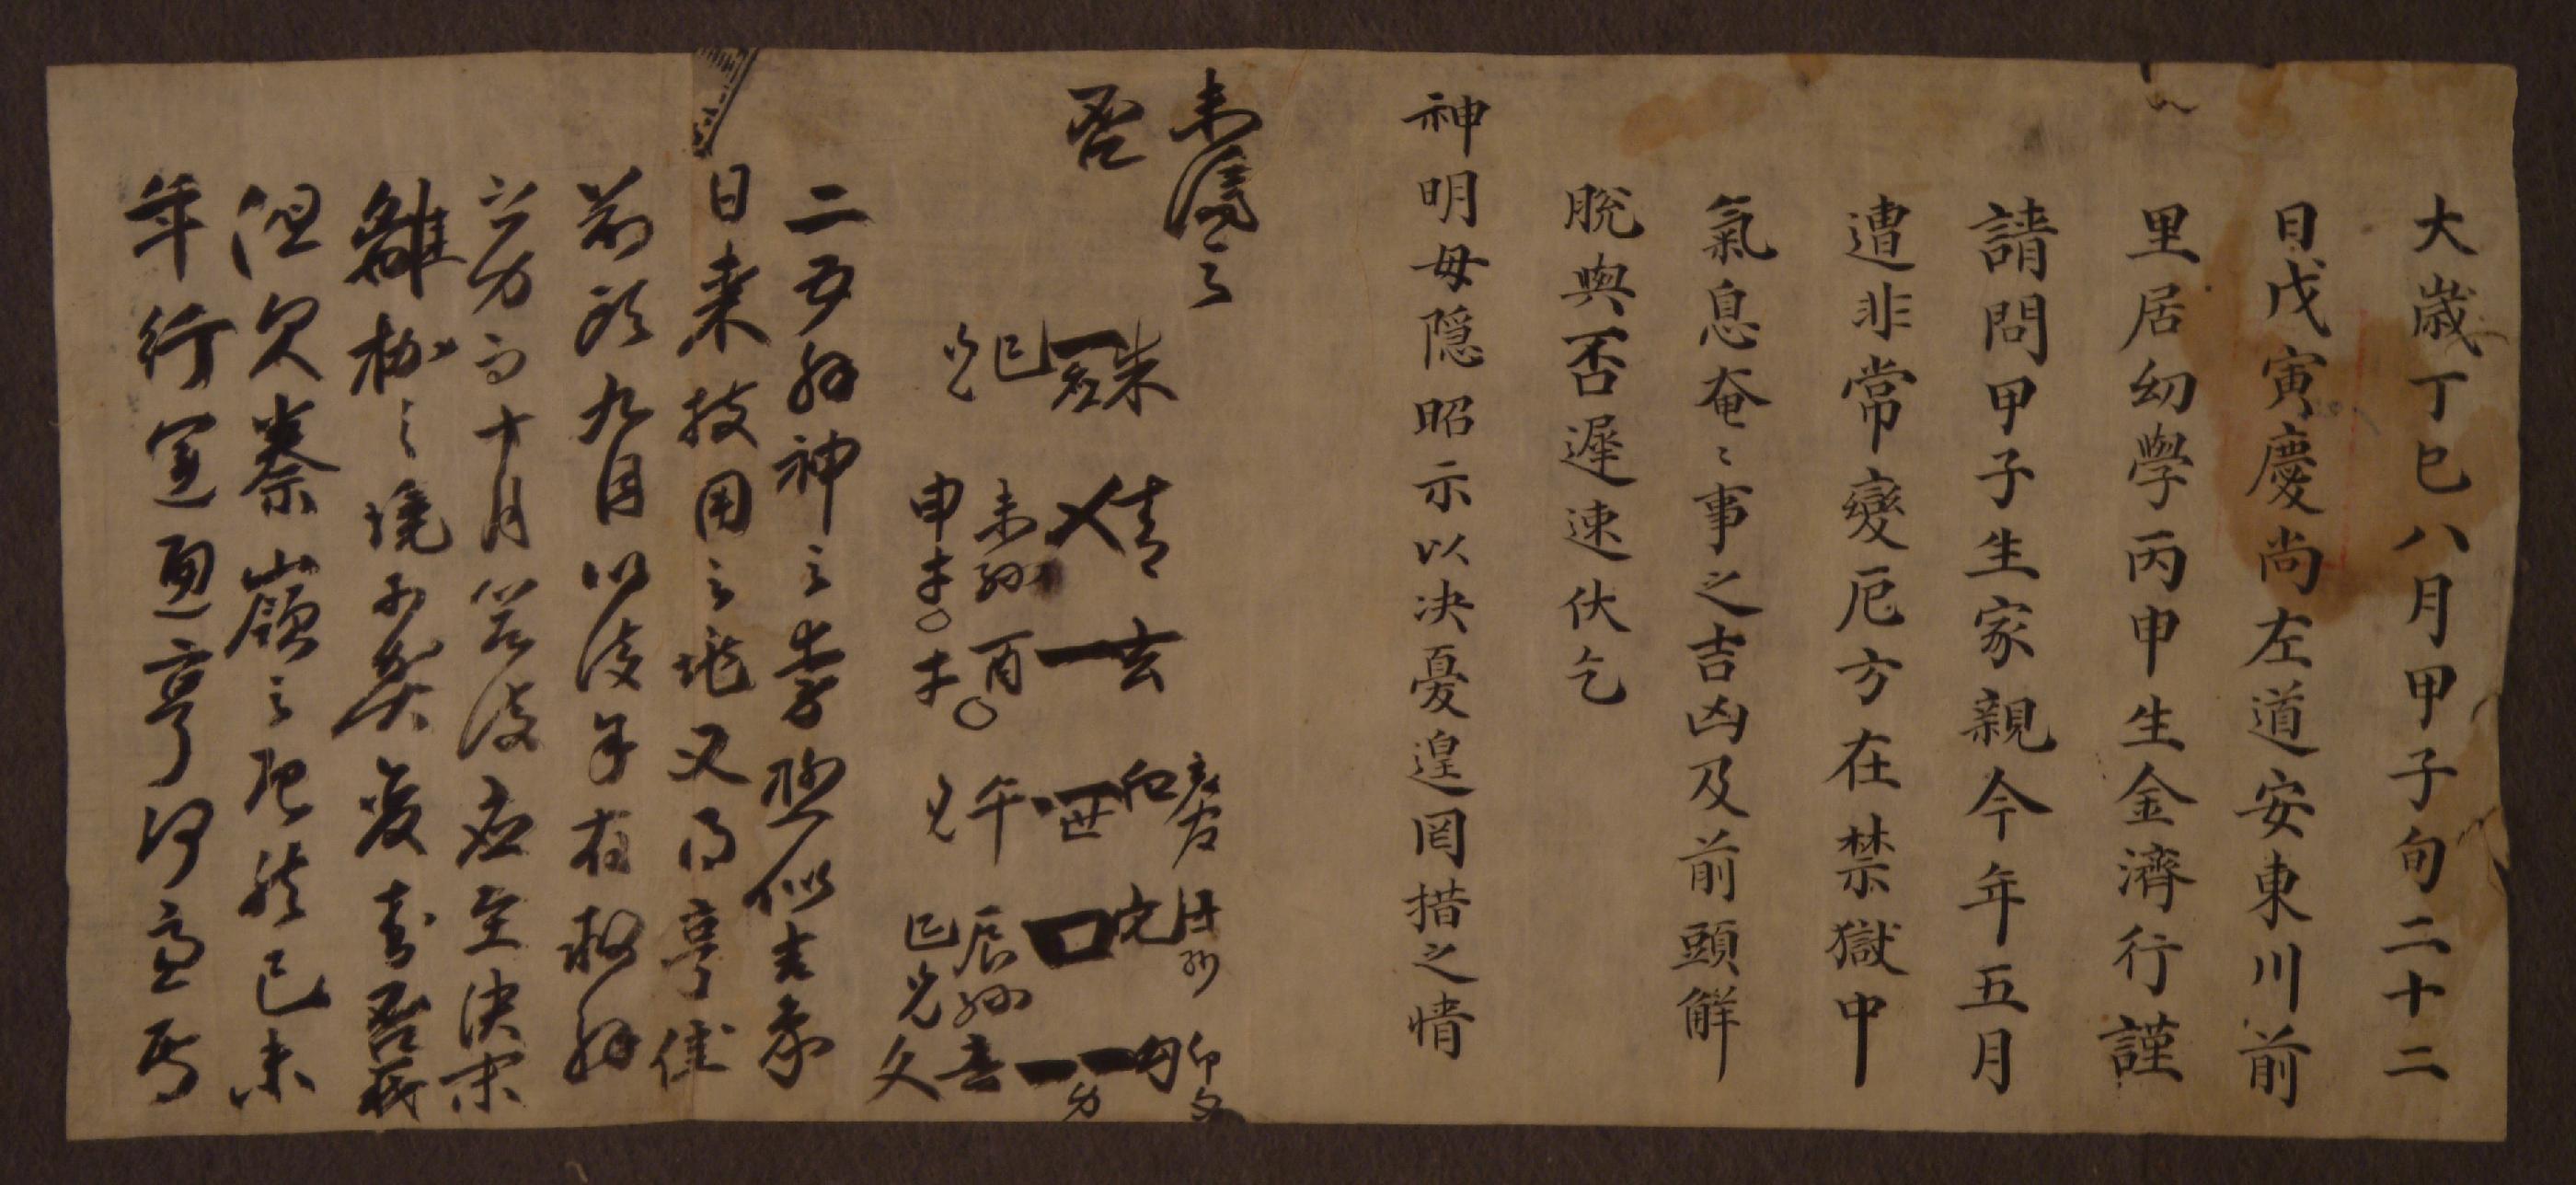 김제행(金濟行)이 정사년에 옥사에 있는 부친의 건강과 방면 여부를 점복한 문서